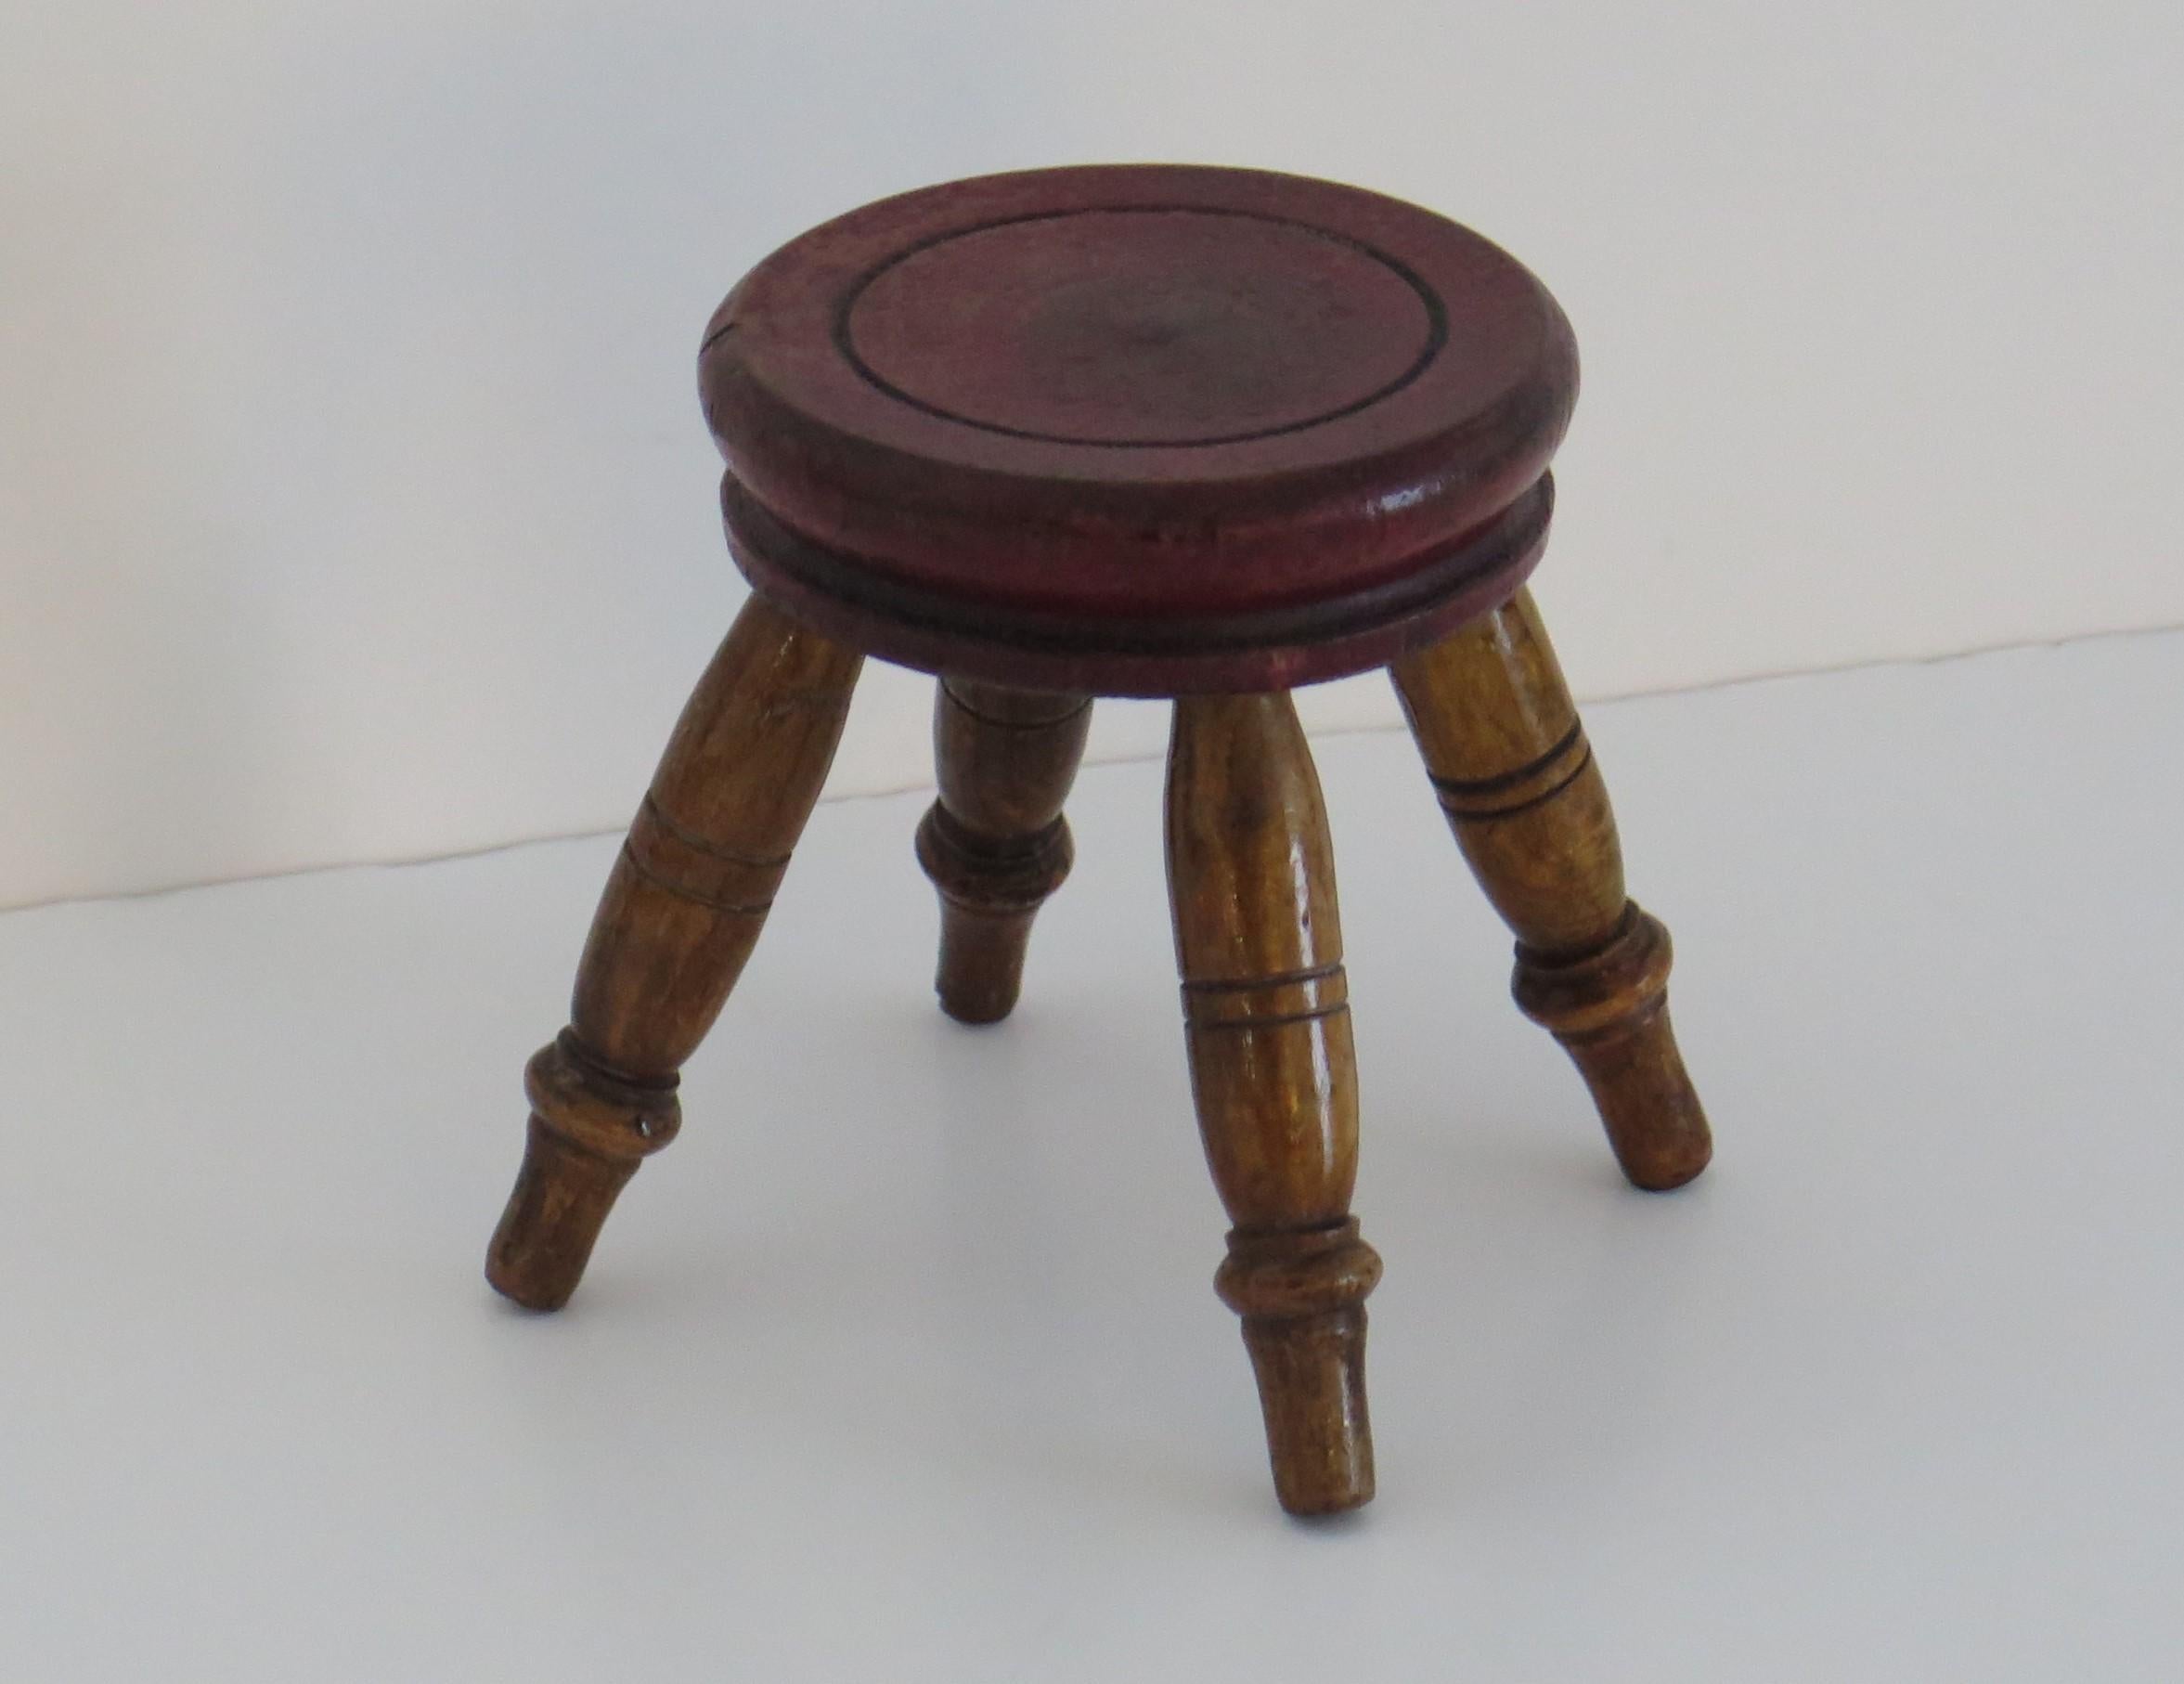 Voici un rare exemple de petit bougeoir ou de très petit tabouret (miniature), vers 1850.

Les petits tabourets ou chandeliers de ces très petites proportions sont rares.

L'épais plateau circulaire est tourné et peint à la main en rouge. Les